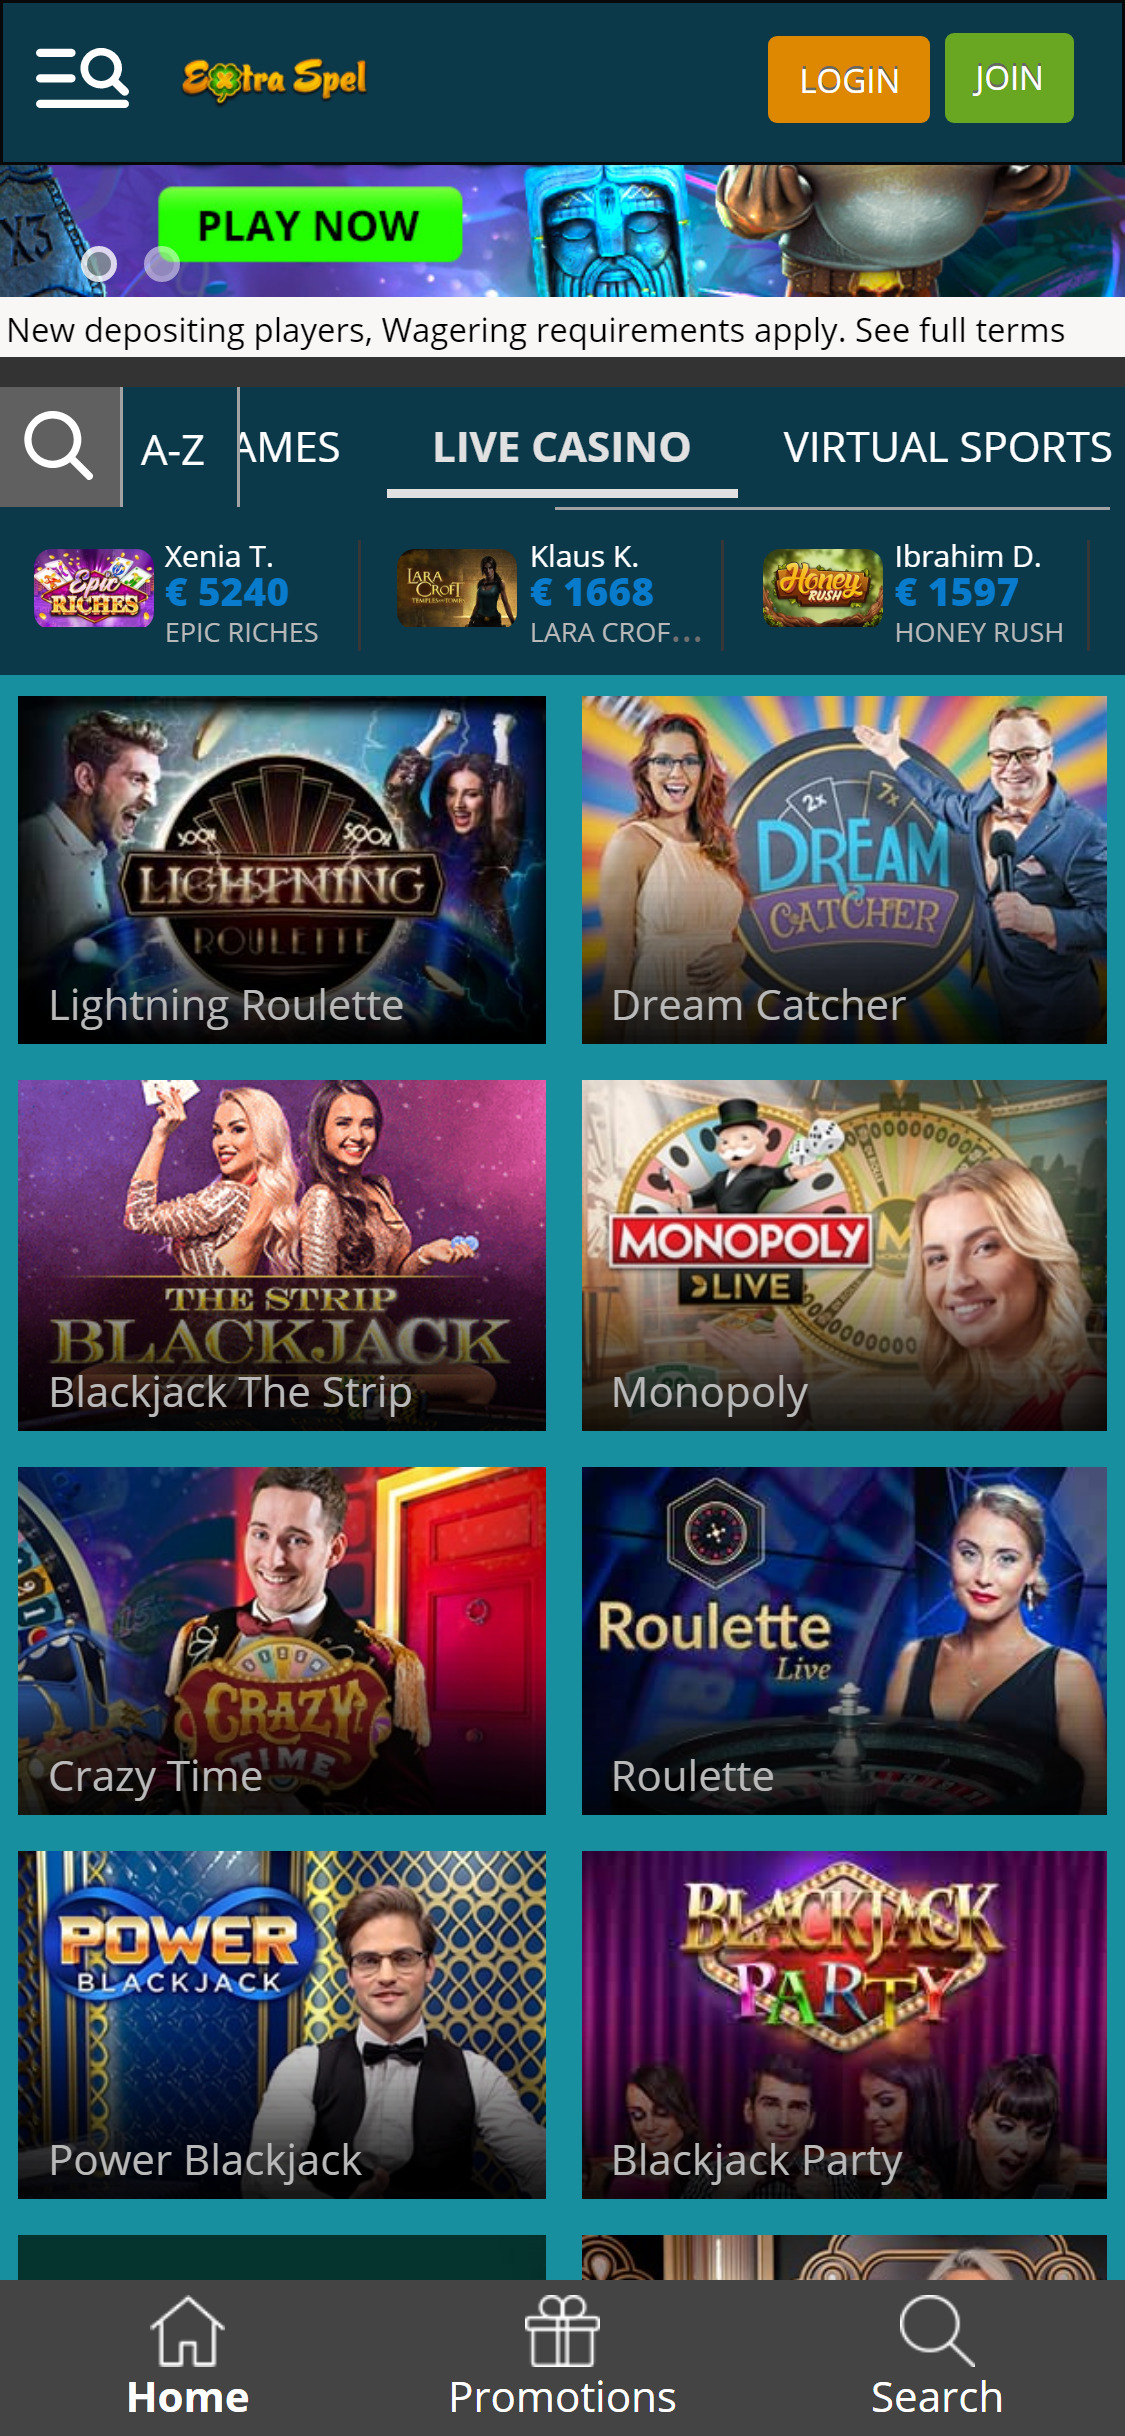 Extra Spel Casino Mobile Live Dealer Games Review